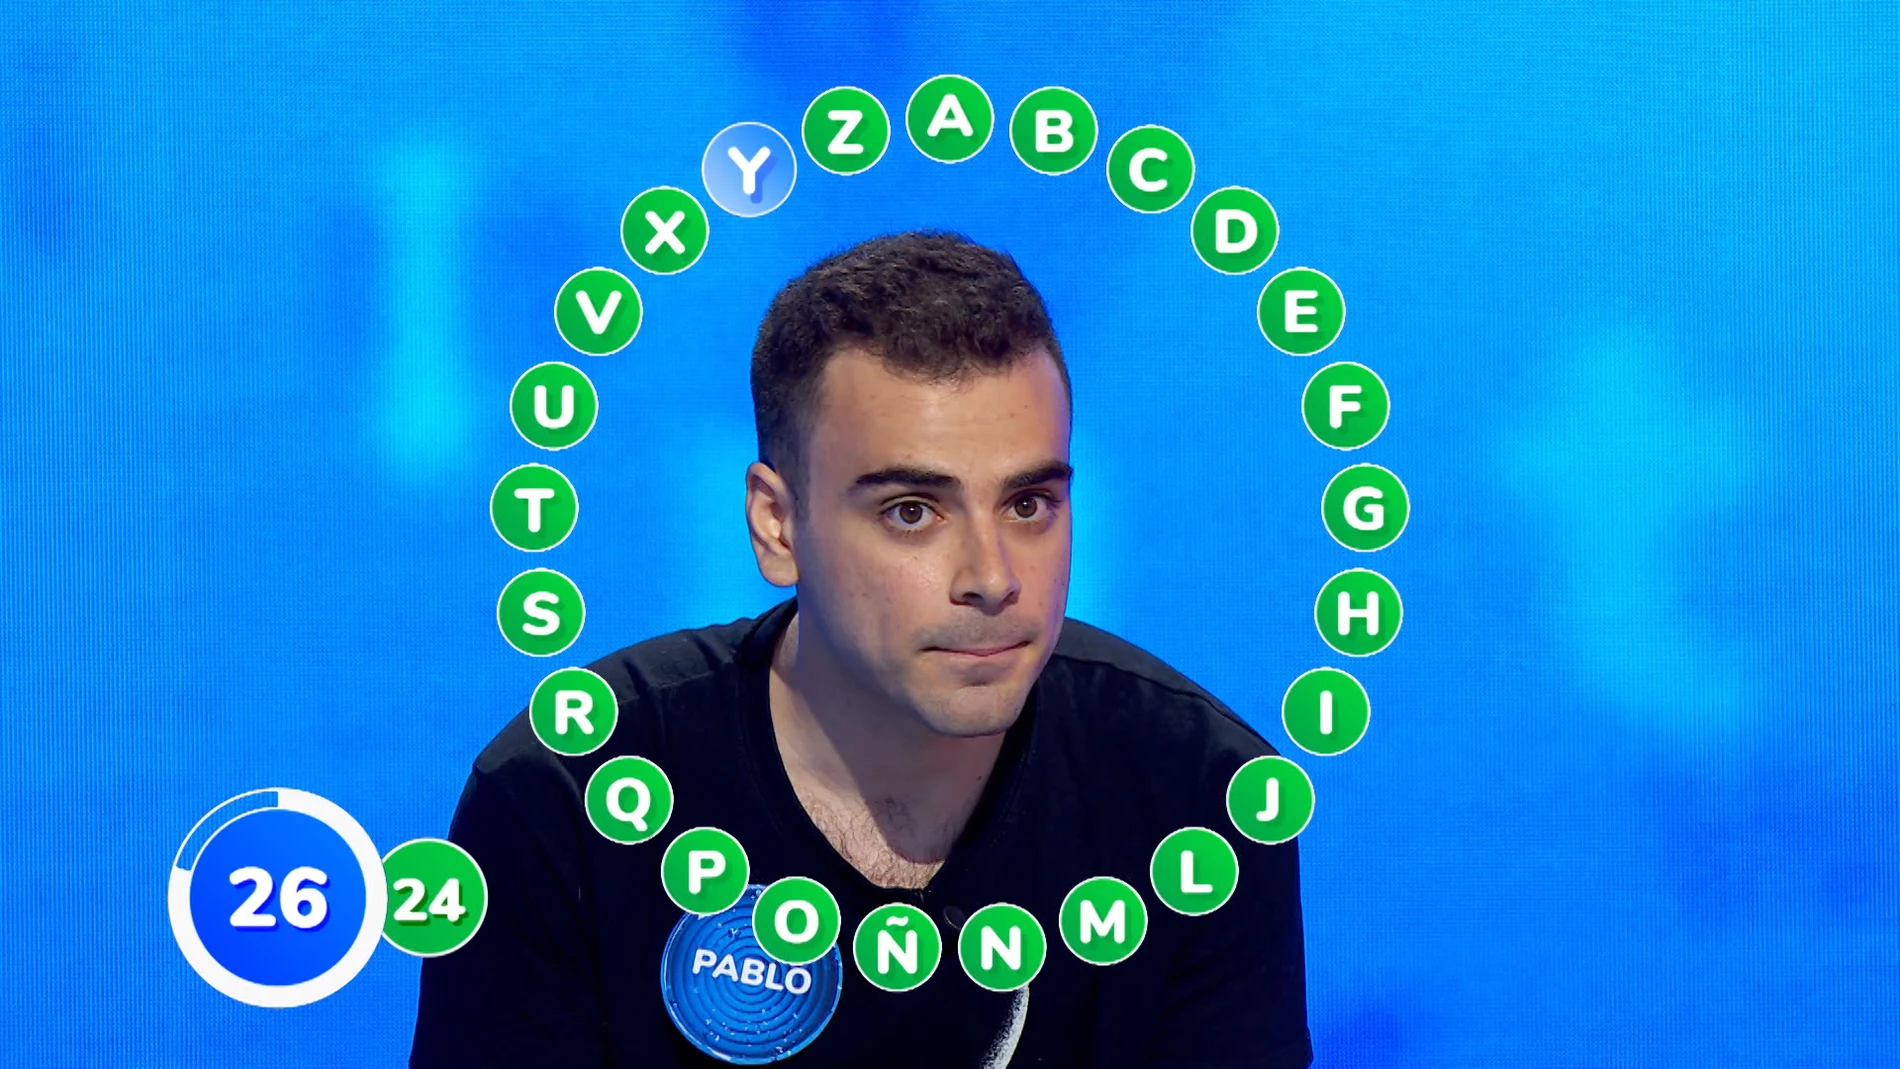 ¡Sorpresón en ‘Pasapalabra’! Pablo, a una de 280.000 euros tras derrotar a Nacho, ¿se la jugará?